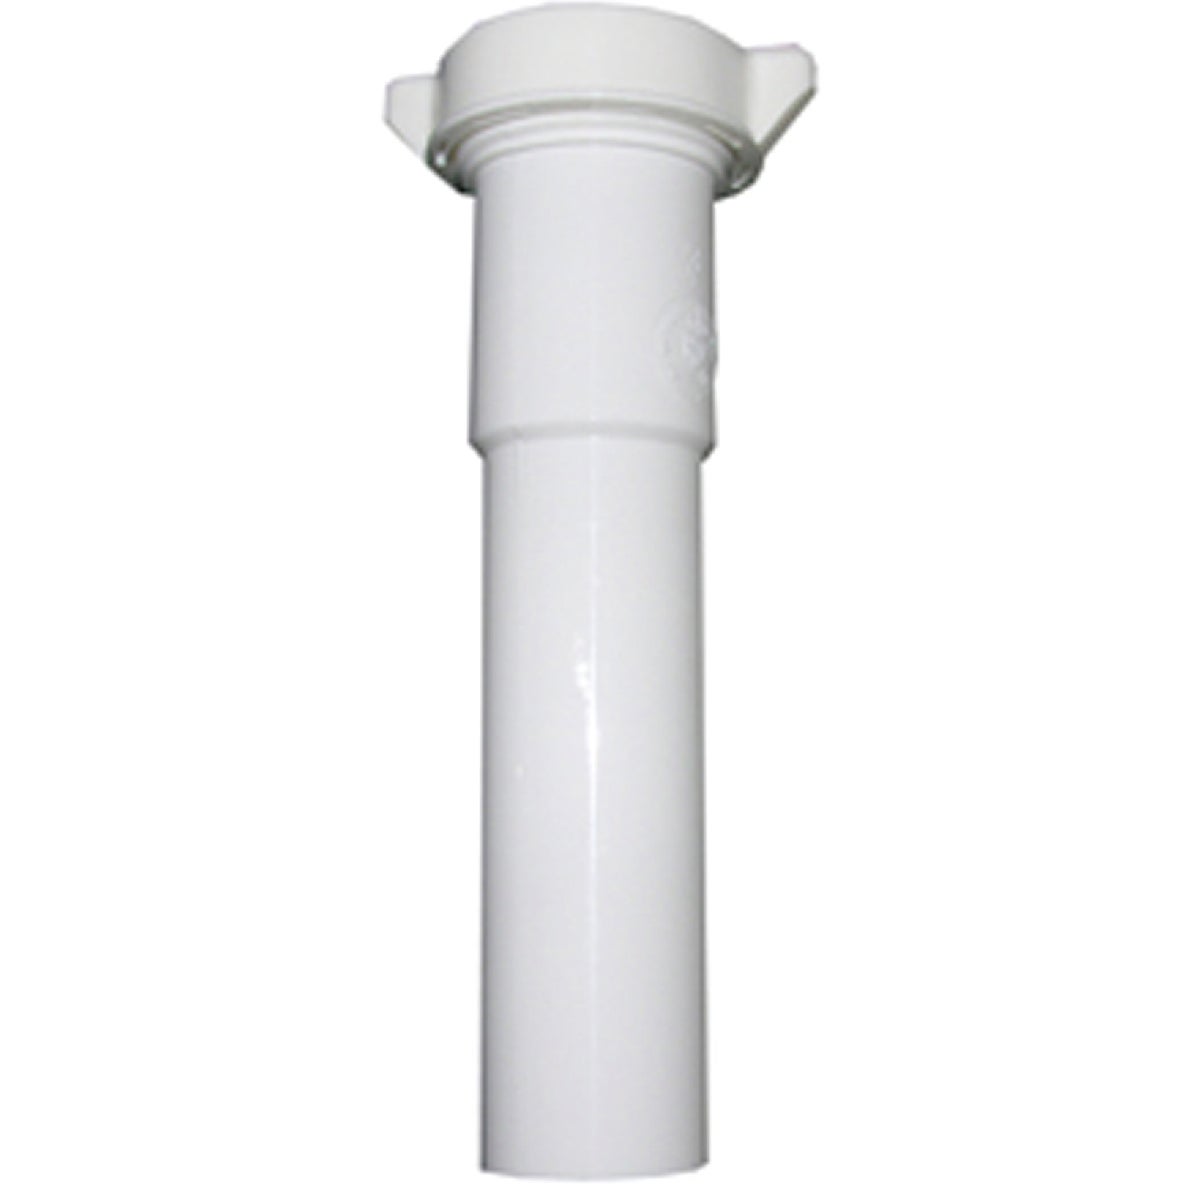 Lasco 1-1/4 In. OD x 6 In. L White Plastic Extension Tube